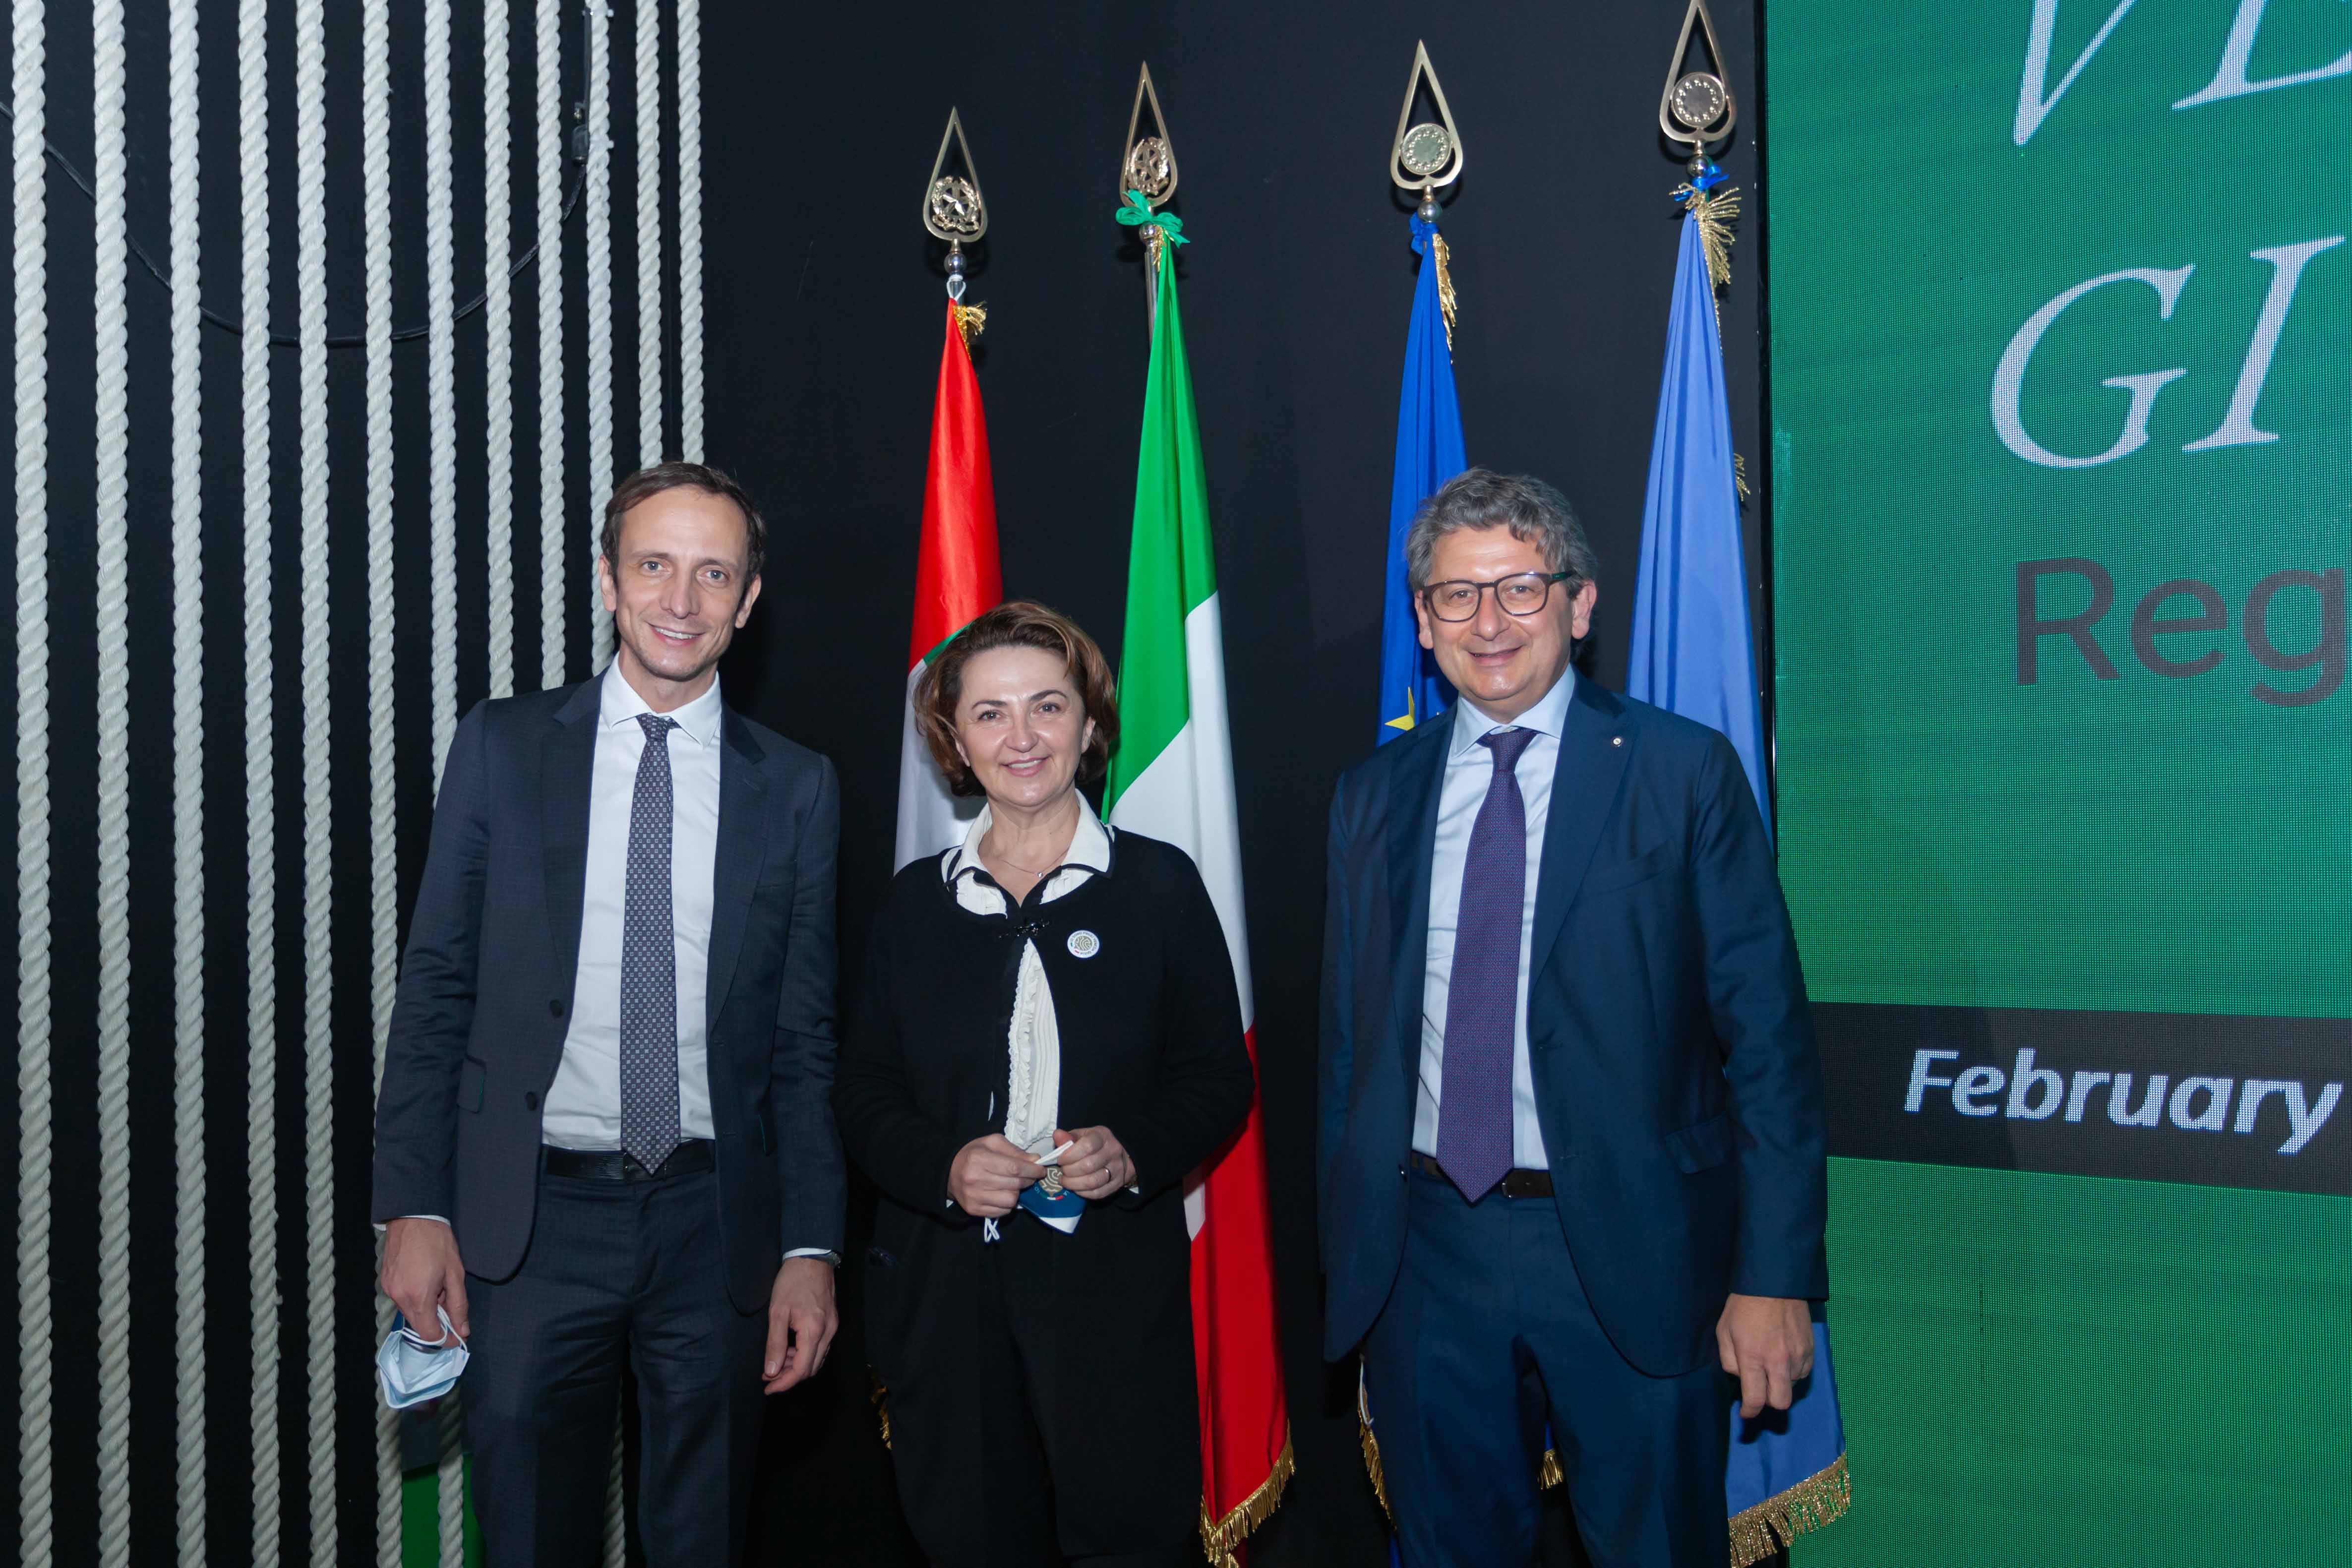 UNIDO ITPO Italy partecipa al Friuli Venezia Giulia Regional Day di Expo 2020 Dubai